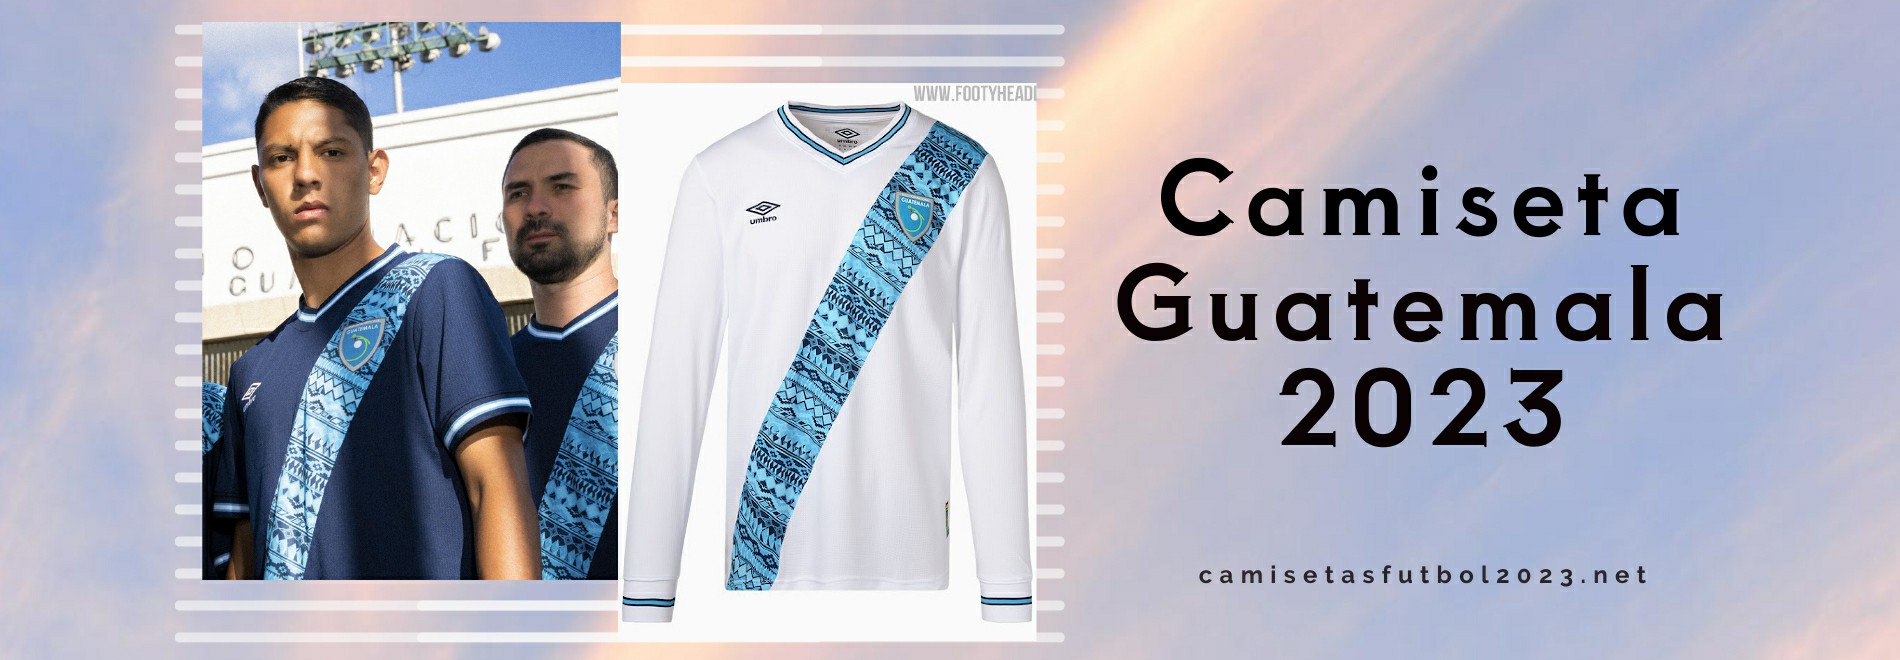 Camiseta Guatemala 2023-2024